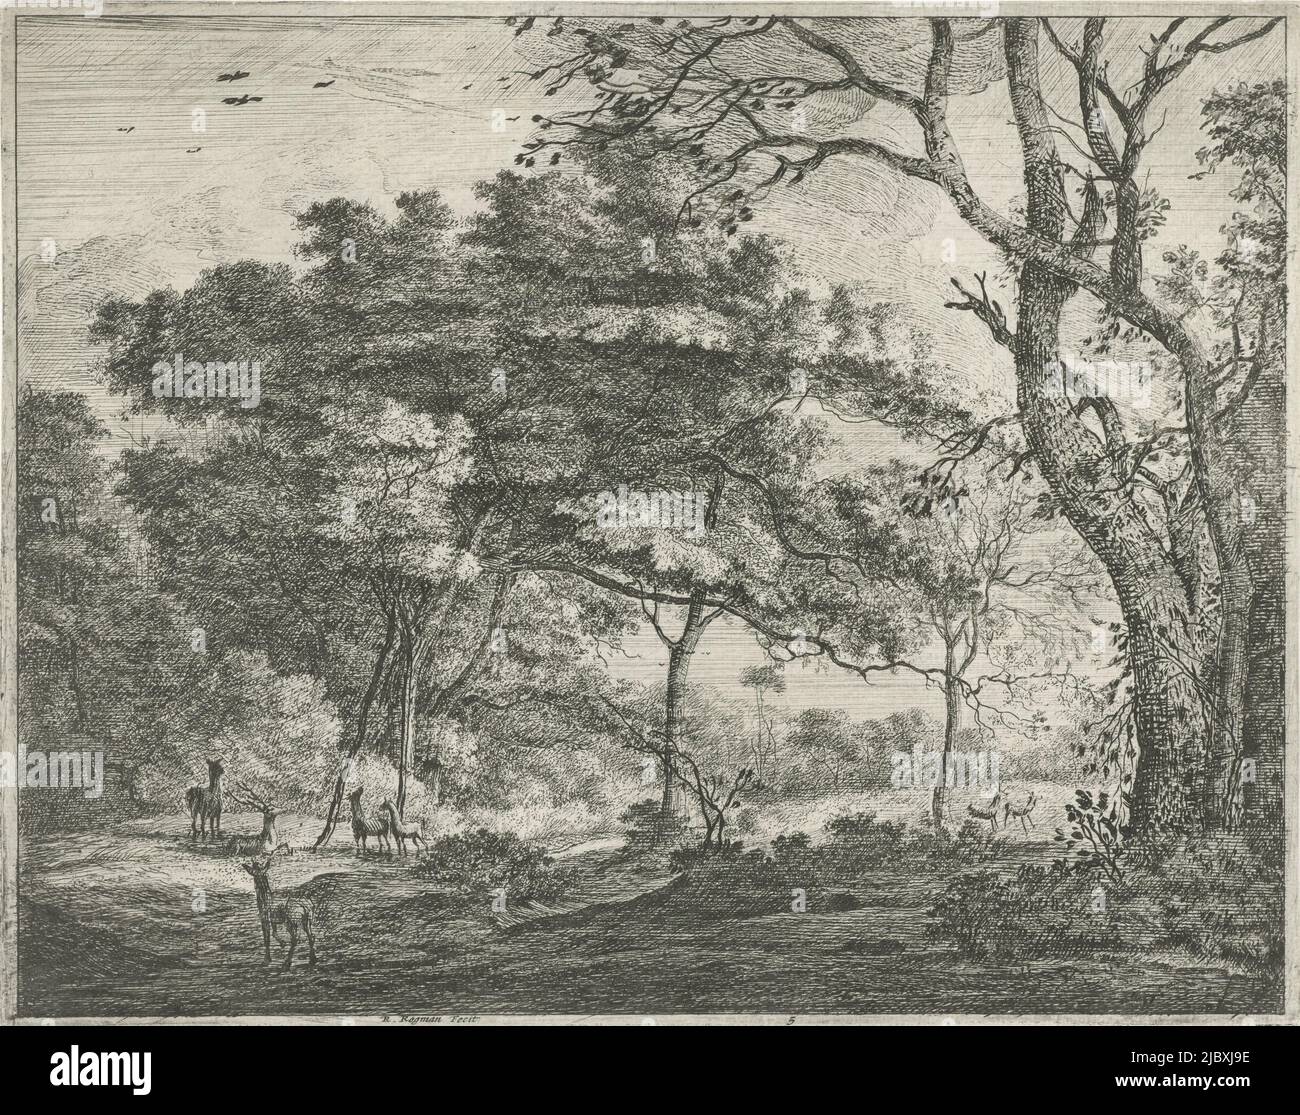 Quelques cerfs se trouvent dans une clairière de la forêt de la Haye. À droite, deux cerfs traversent un champ., Deer dans la forêt de la Haye, imprimerie: Roelant Roghman, (mentionné sur l'objet), Amsterdam, 1637 - 1692, papier, gravure, h 207 mm × l 262 mm Banque D'Images